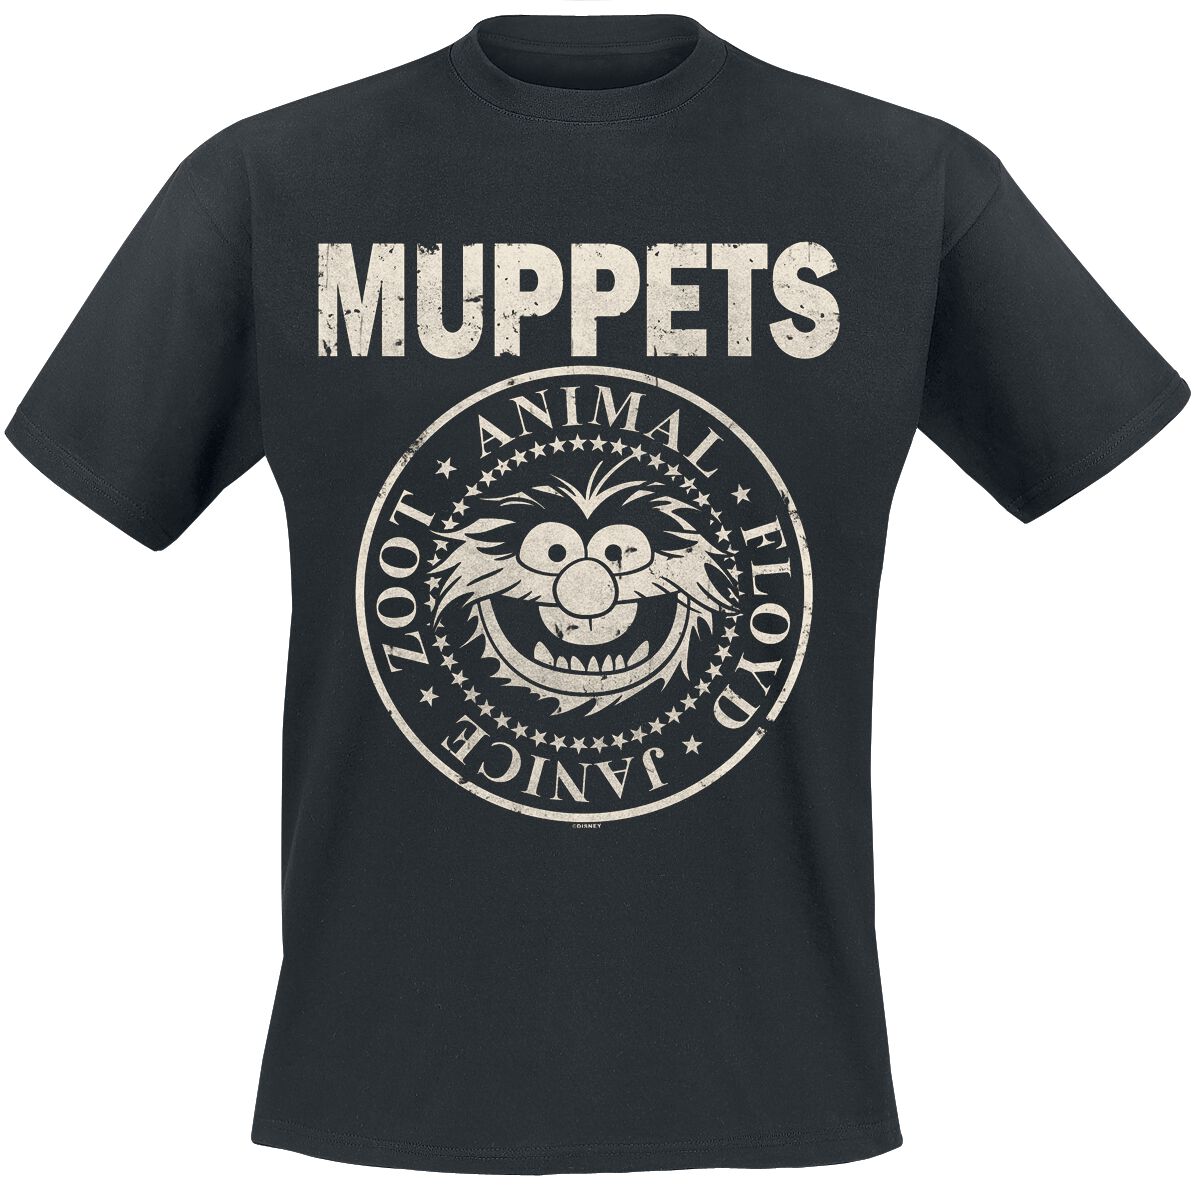 Die Muppets T-Shirt - Animal - Rock ´n Roll - S bis XXL - für Männer - Größe M - schwarz  - EMP exklusives Merchandise!